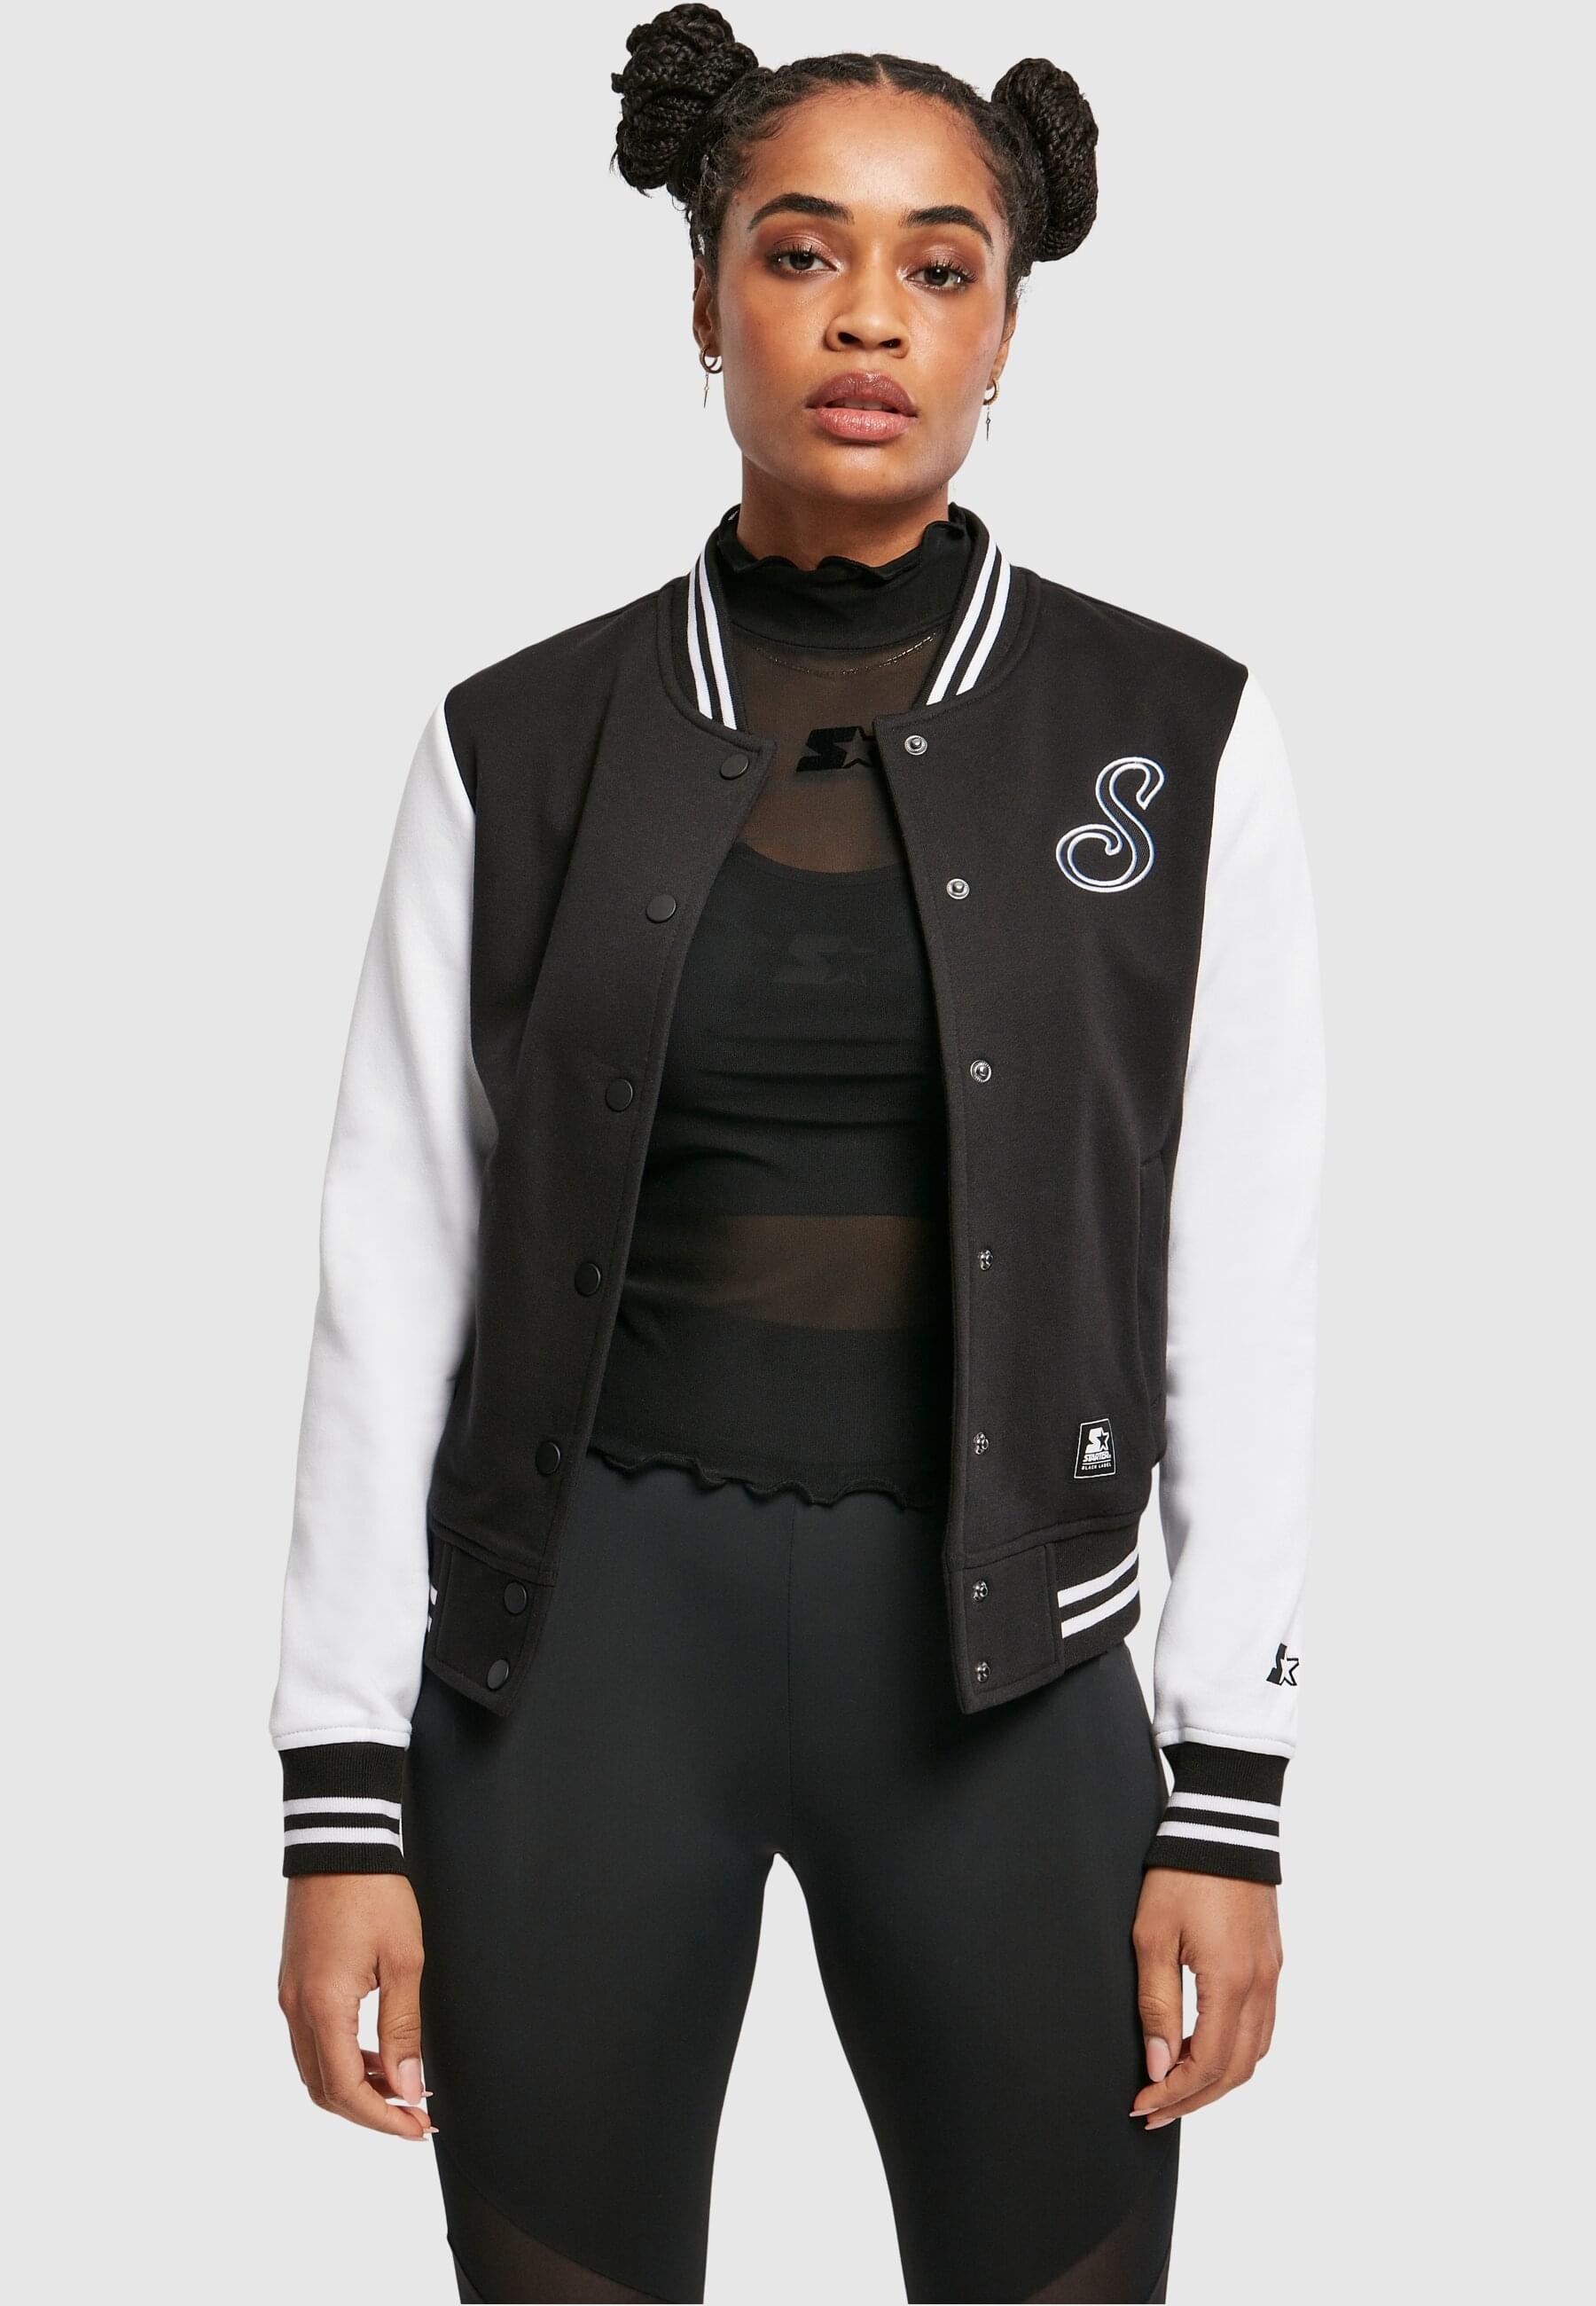 Starter Black Label Collegejacke »Starter Black Label Damen Ladies Starter Sweat College Jacket«, (1 St.), ohne Kapuze